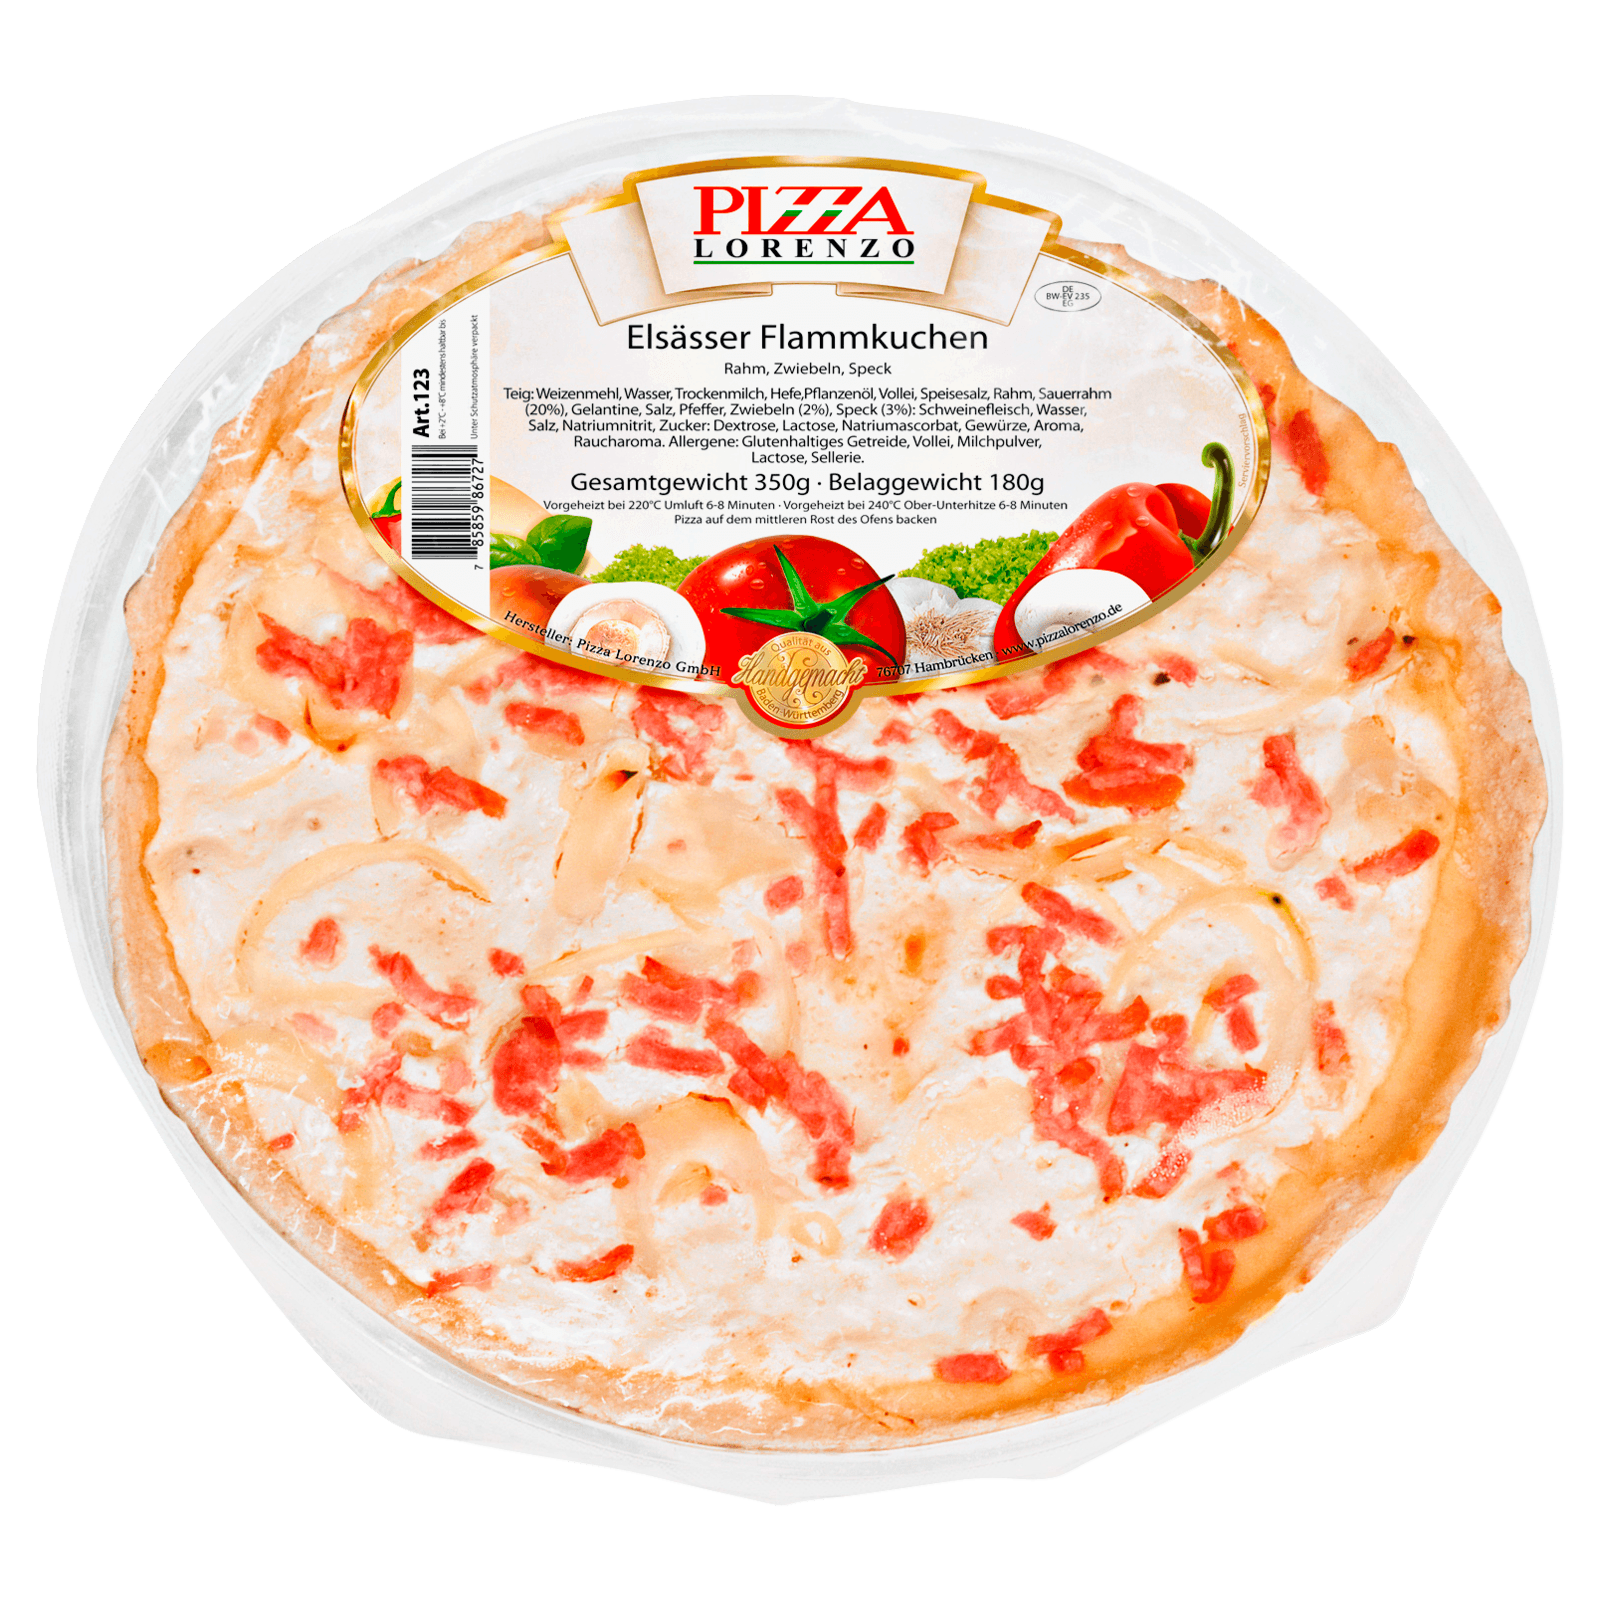 Pizza Lorenzo Elsässer Flammkuchen 350g  für 3.99 EUR